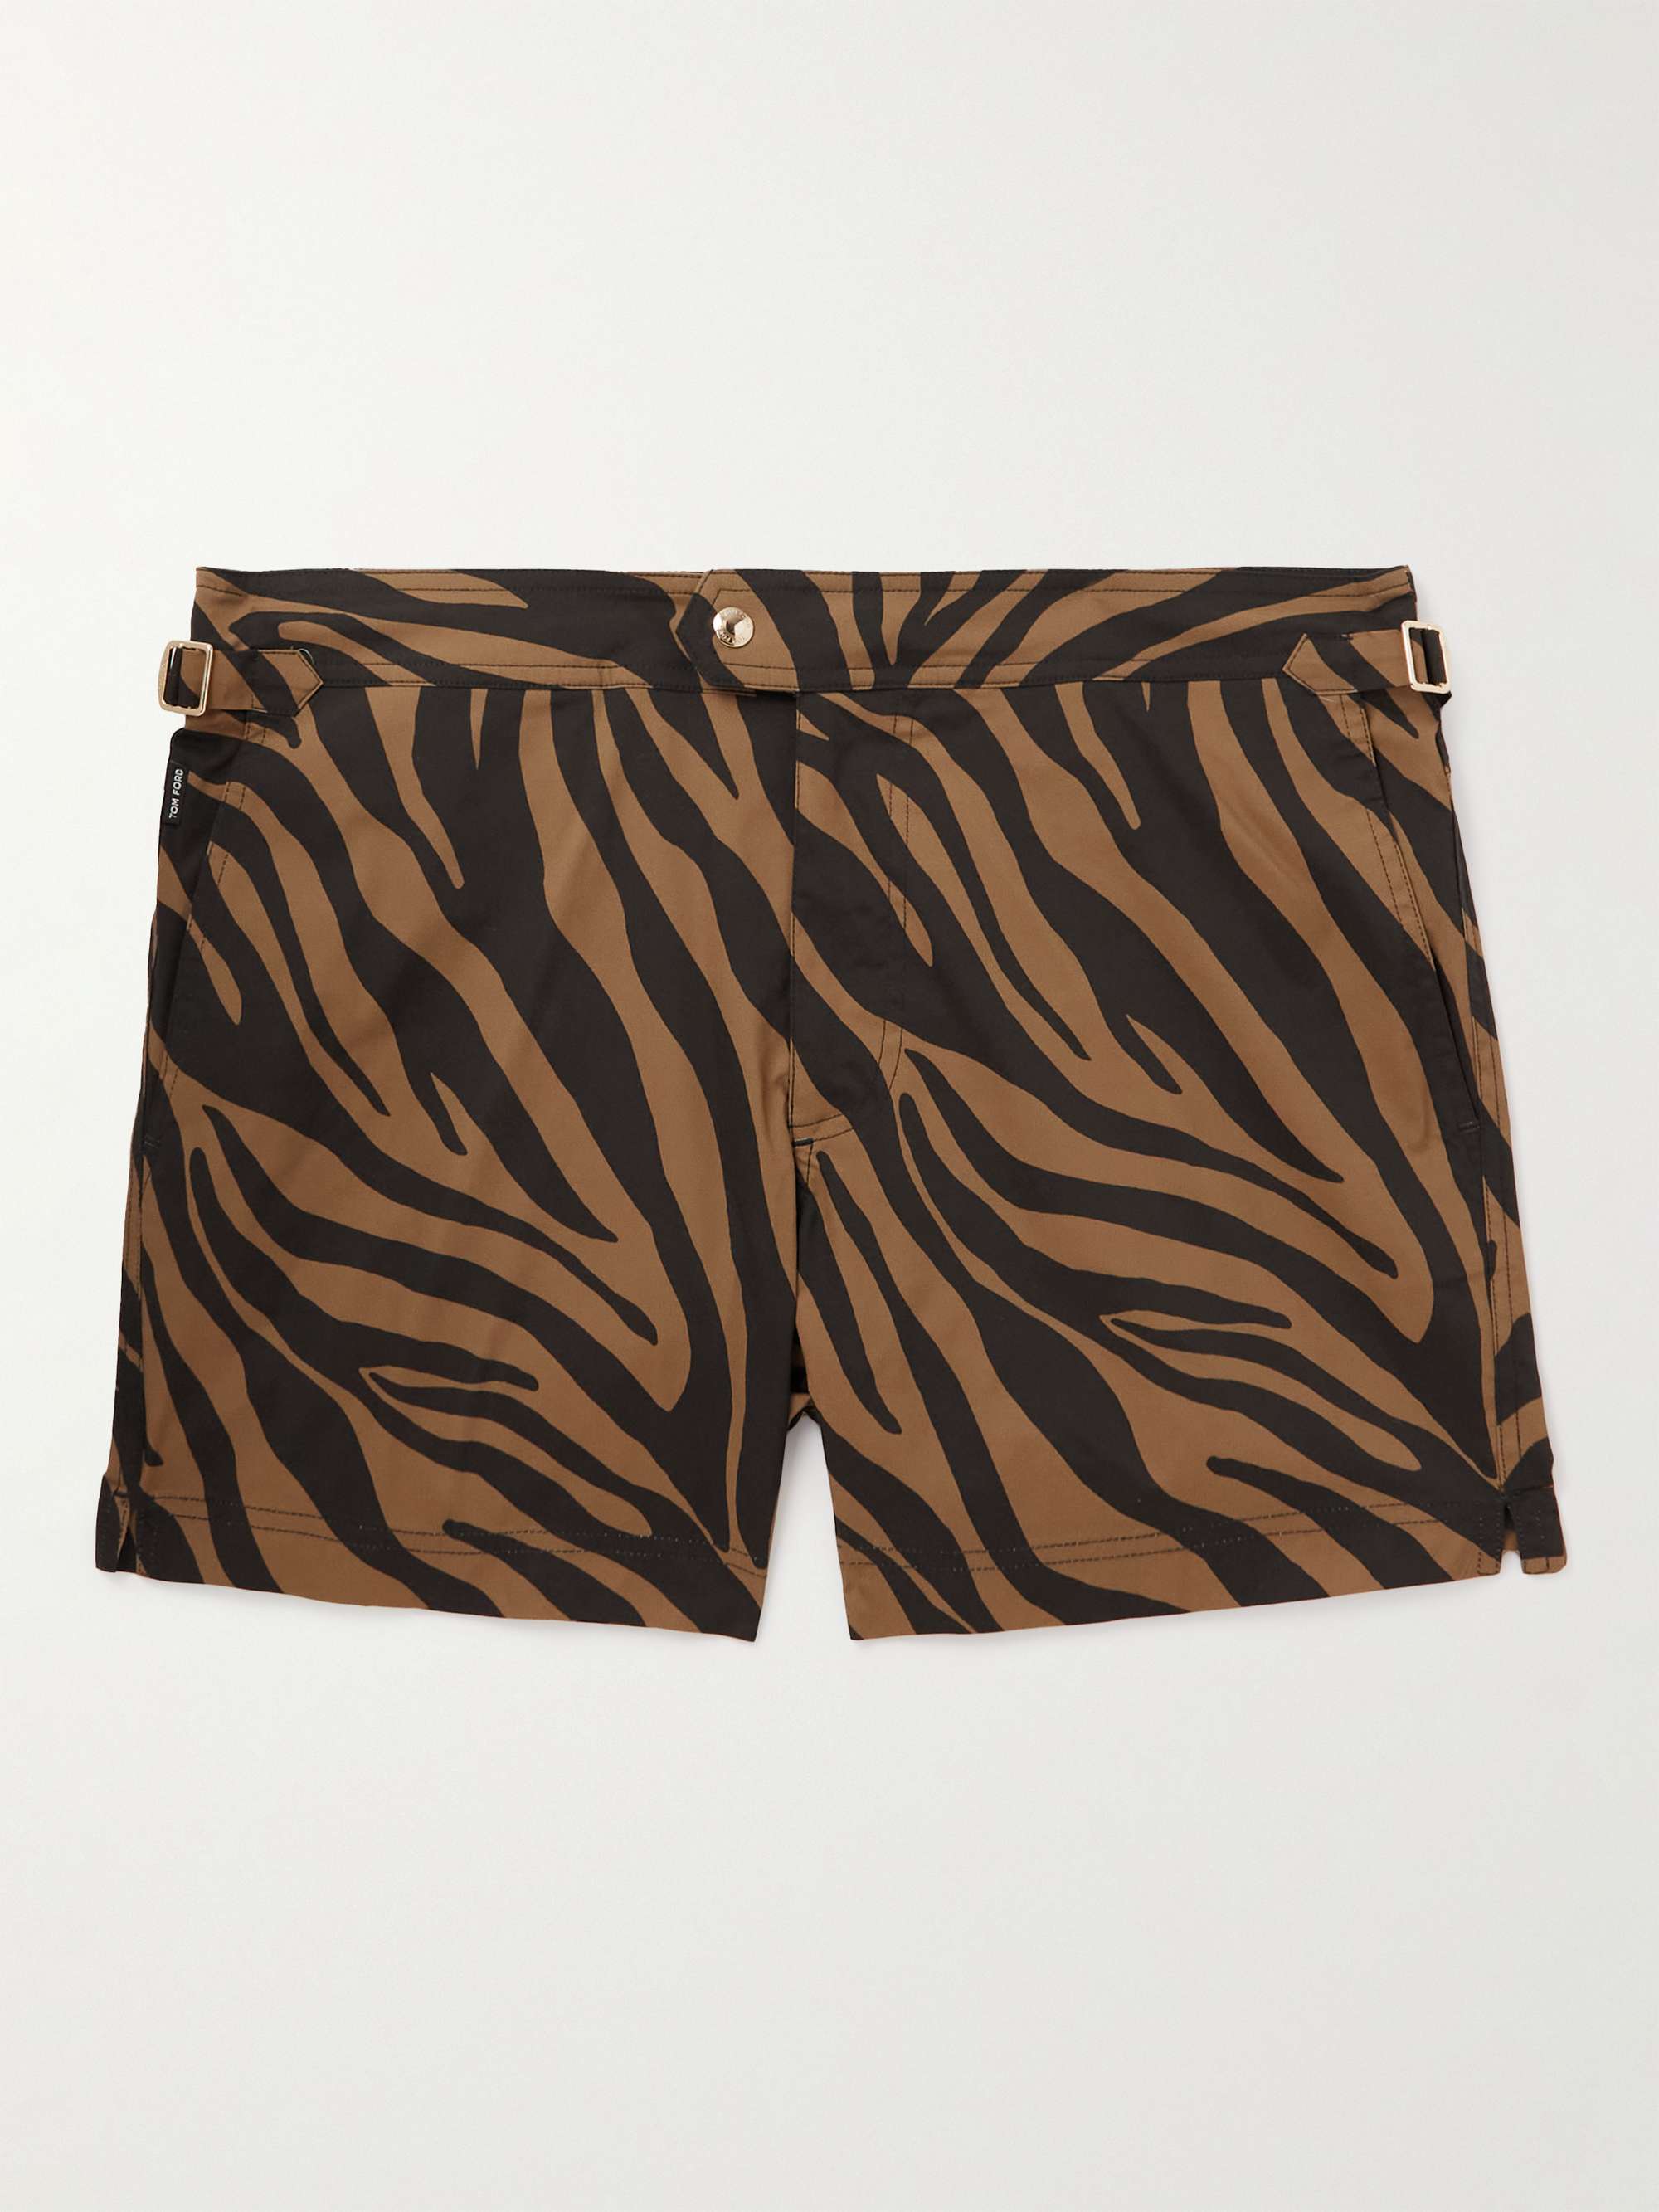 TOM FORD Slim-Fit Short-Length Zebra-Print Swim Shorts for Men | MR PORTER